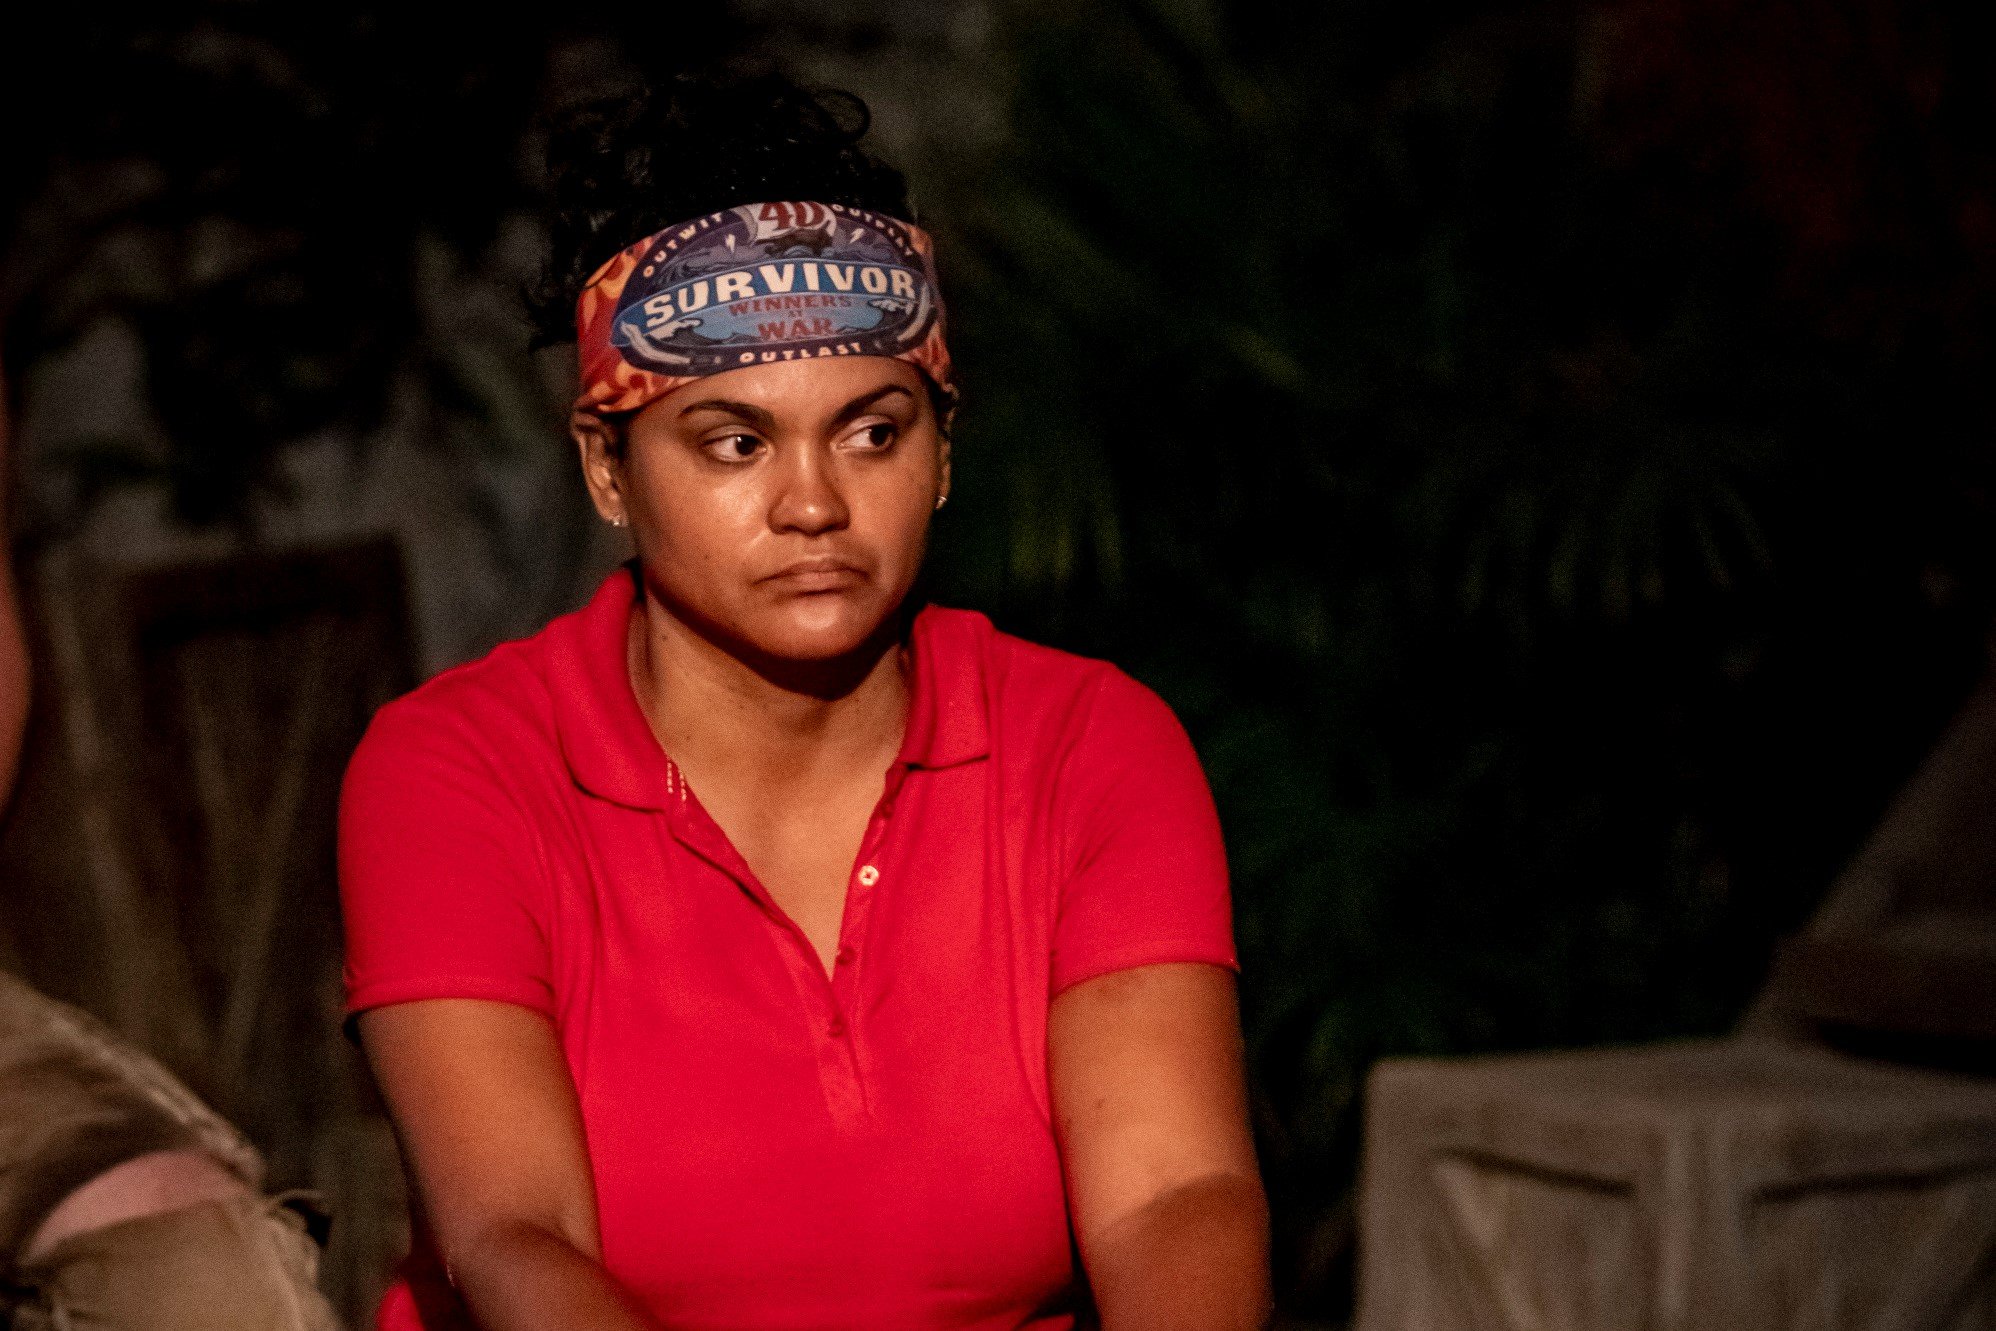 'Survivor' winner Sandra Diaz-Twine wears a red shirt and a red 'Survivor' bluff on her head.